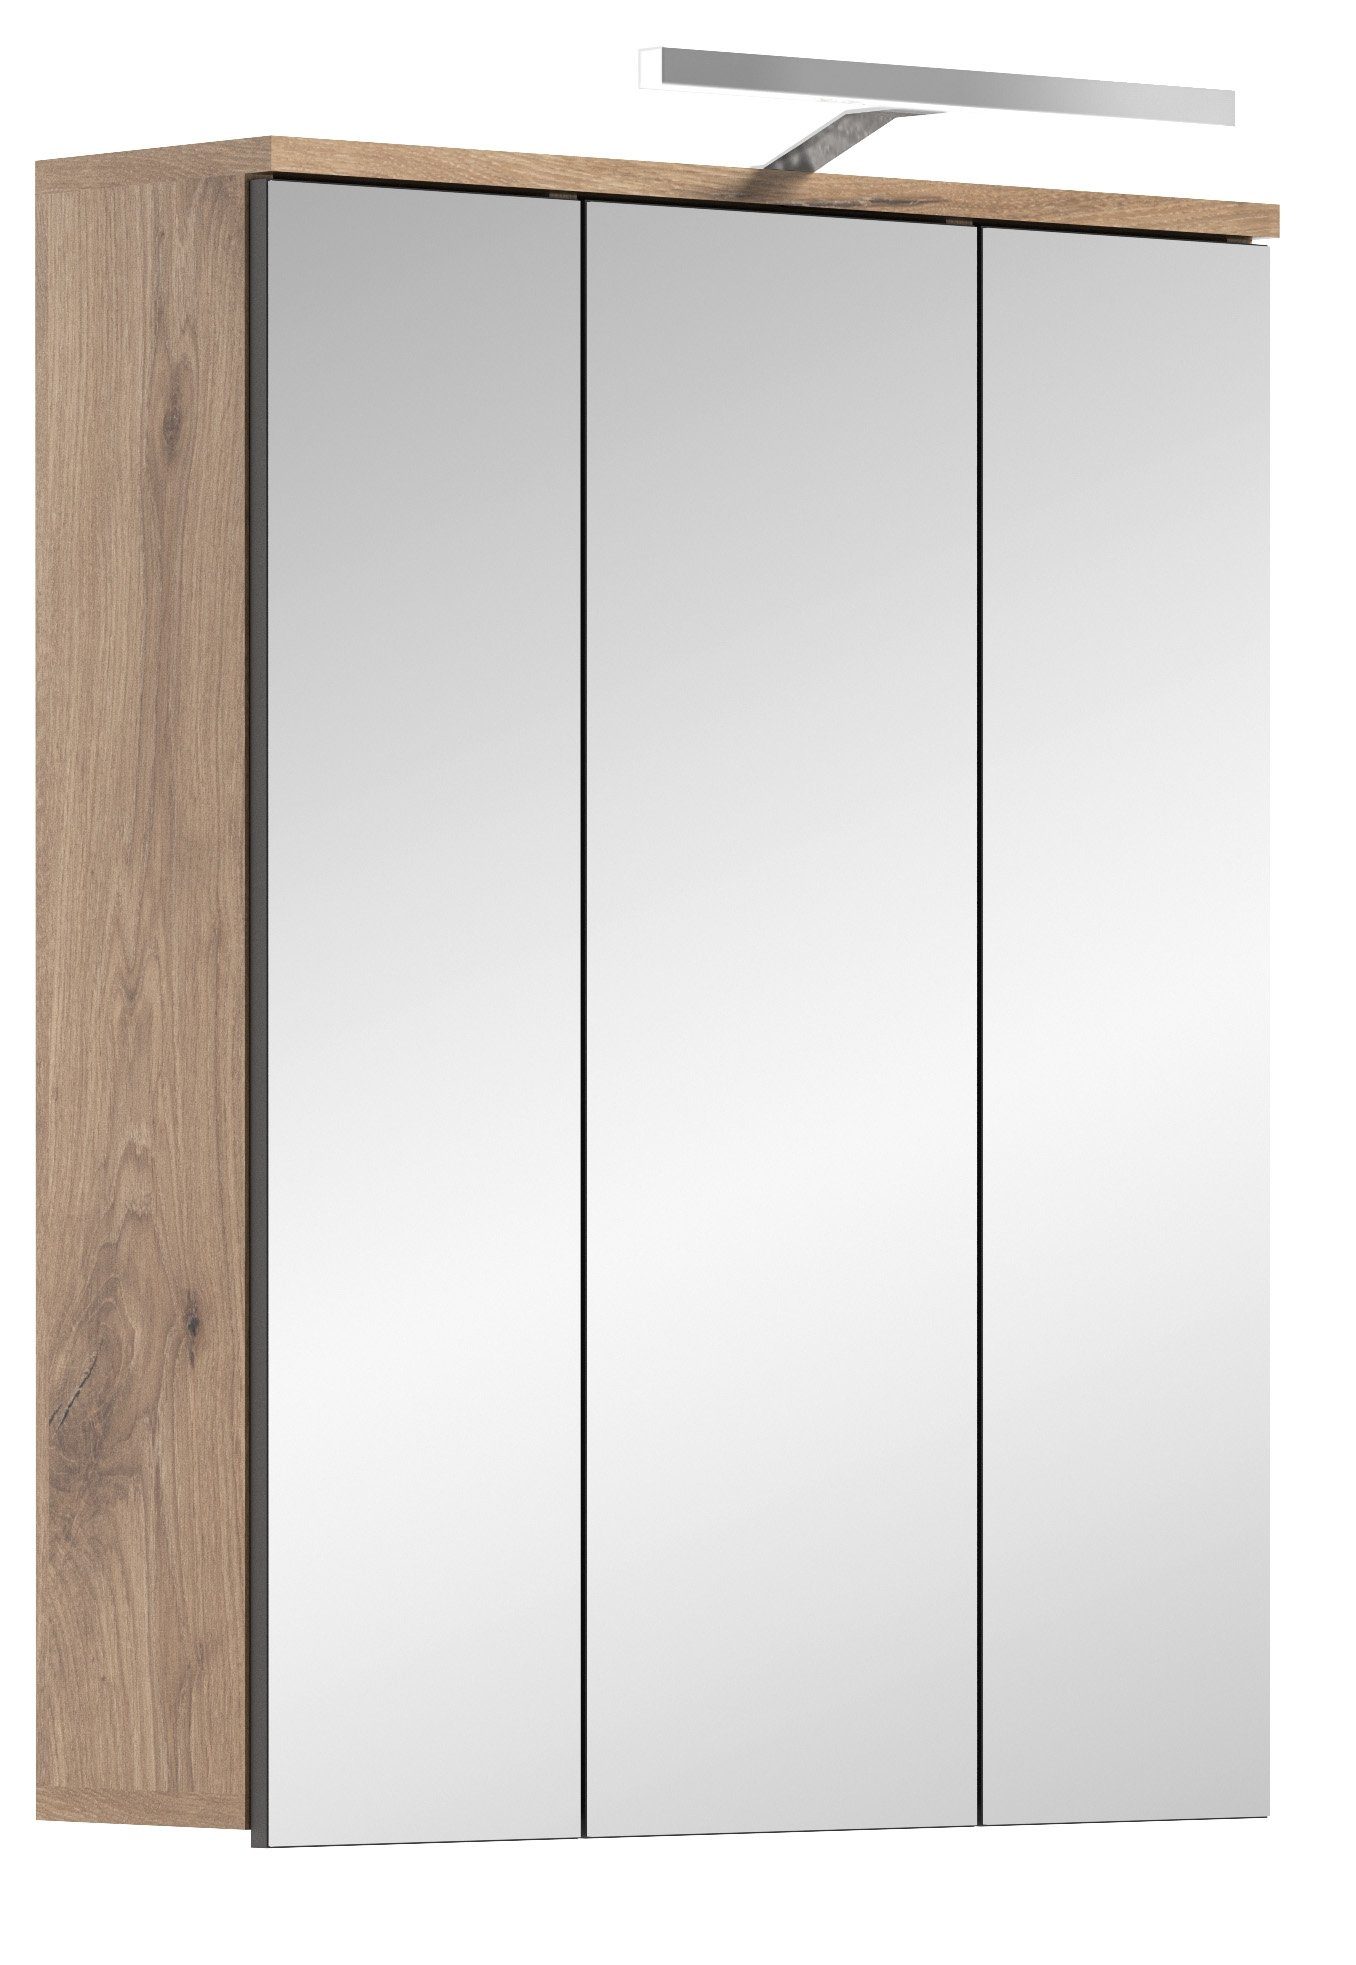 Newroom Spiegelschrank Doyle Spiegelschrank Eiche Spiegelglas Modern Spiegel Wandspiegel Bad